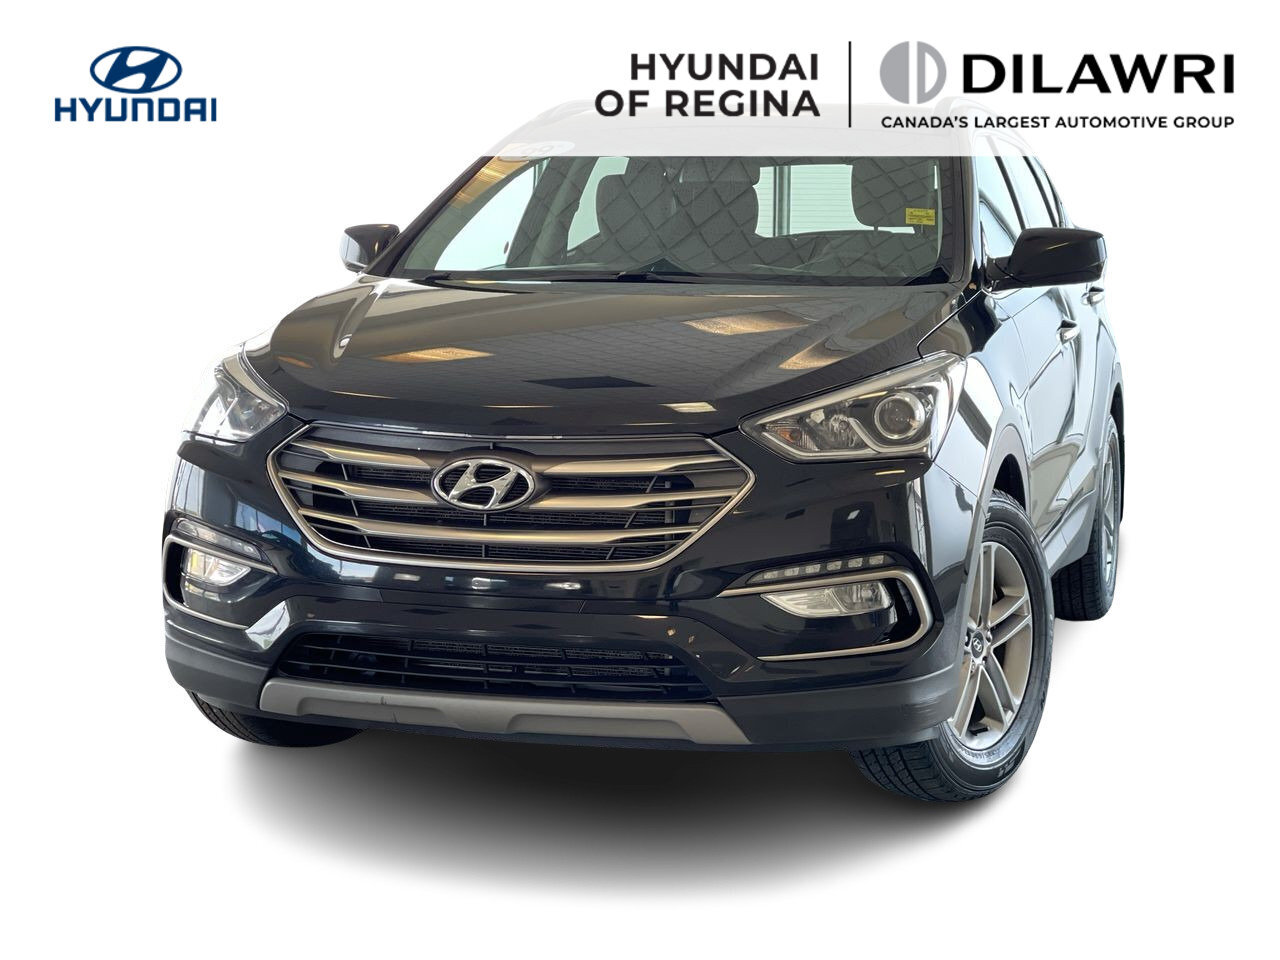 2018 Hyundai Santa Fe Sport AWD 2.4 Rear Camera, Heated Seats, Low Kilometer